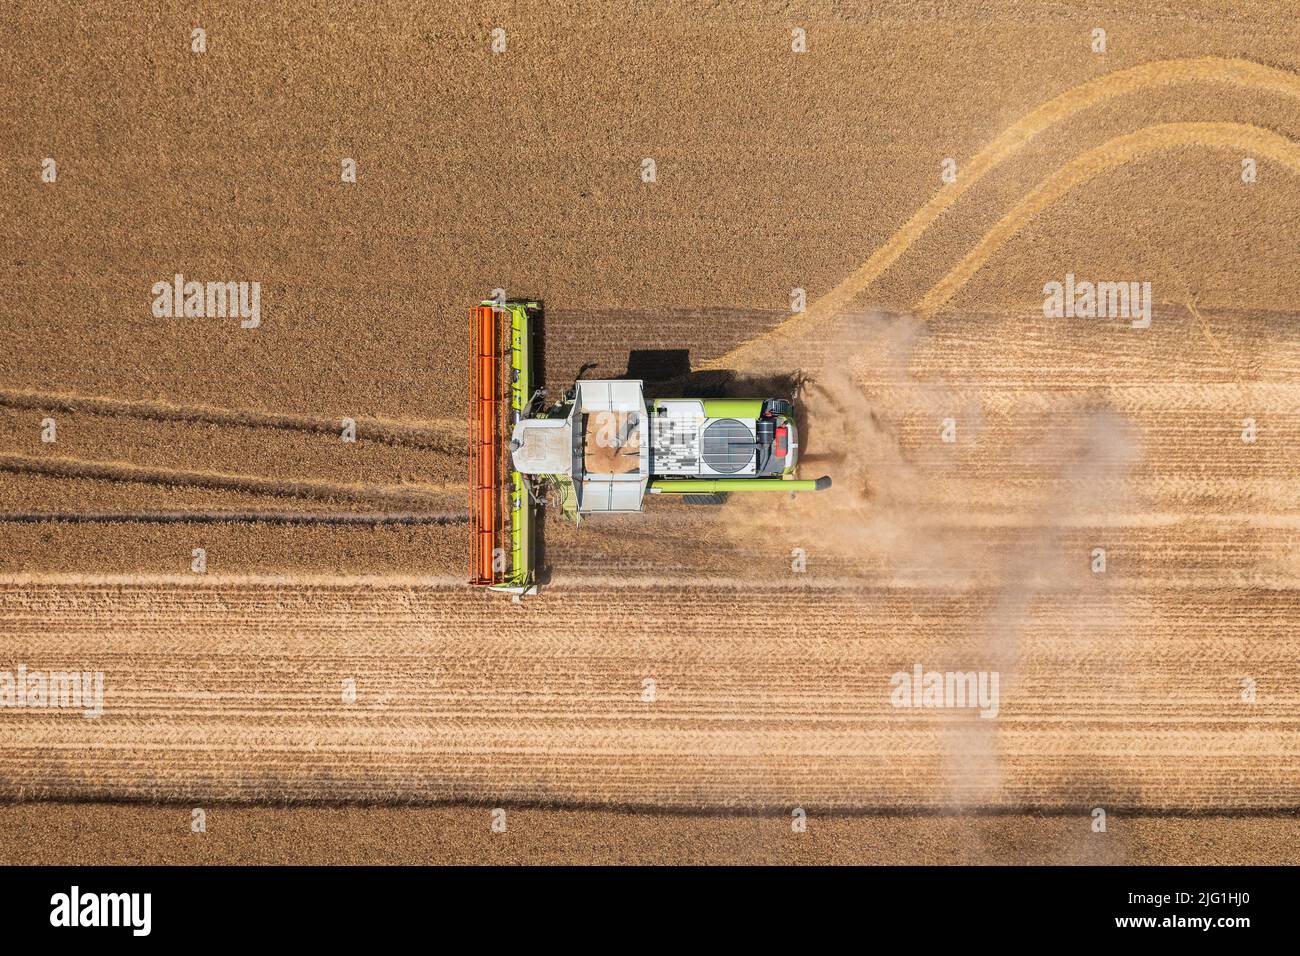 Vista aerea dall'alto verso il basso della mietitrebbia che lavora su campi di grano. Attività agricola, paesaggio agricolo ungherese, crisi alimentare. Foto Stock